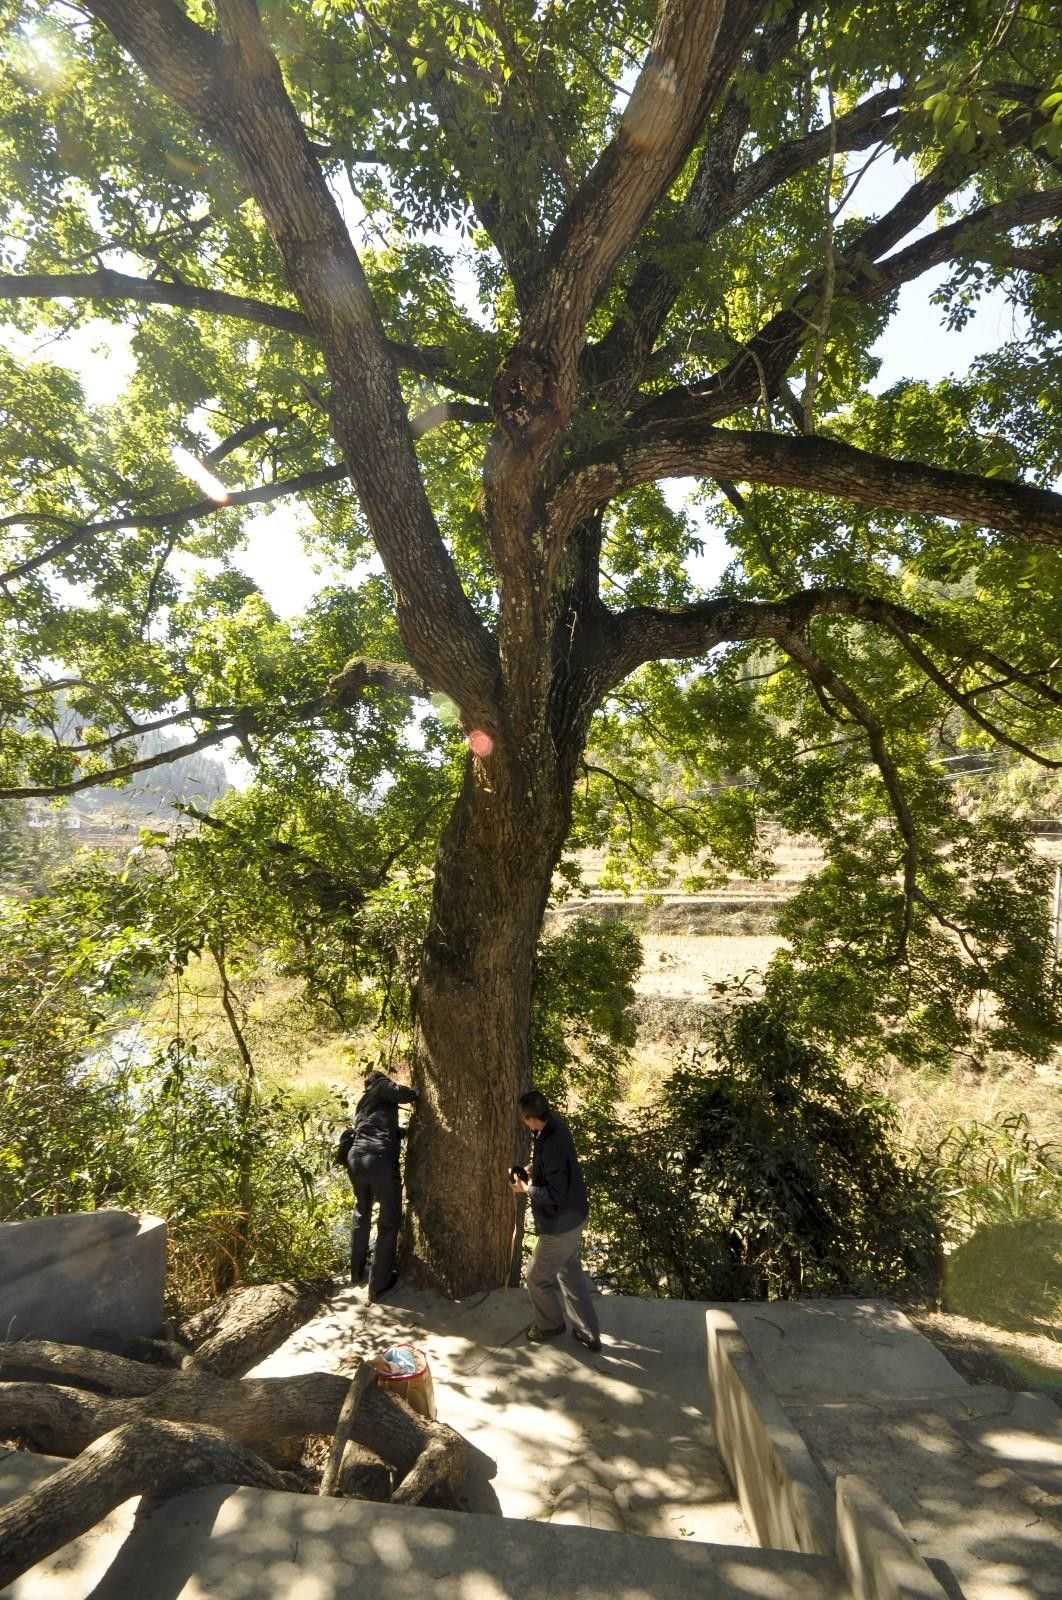 梅州市最美古树名木之樟树:平远县泗水镇文贵村樟树